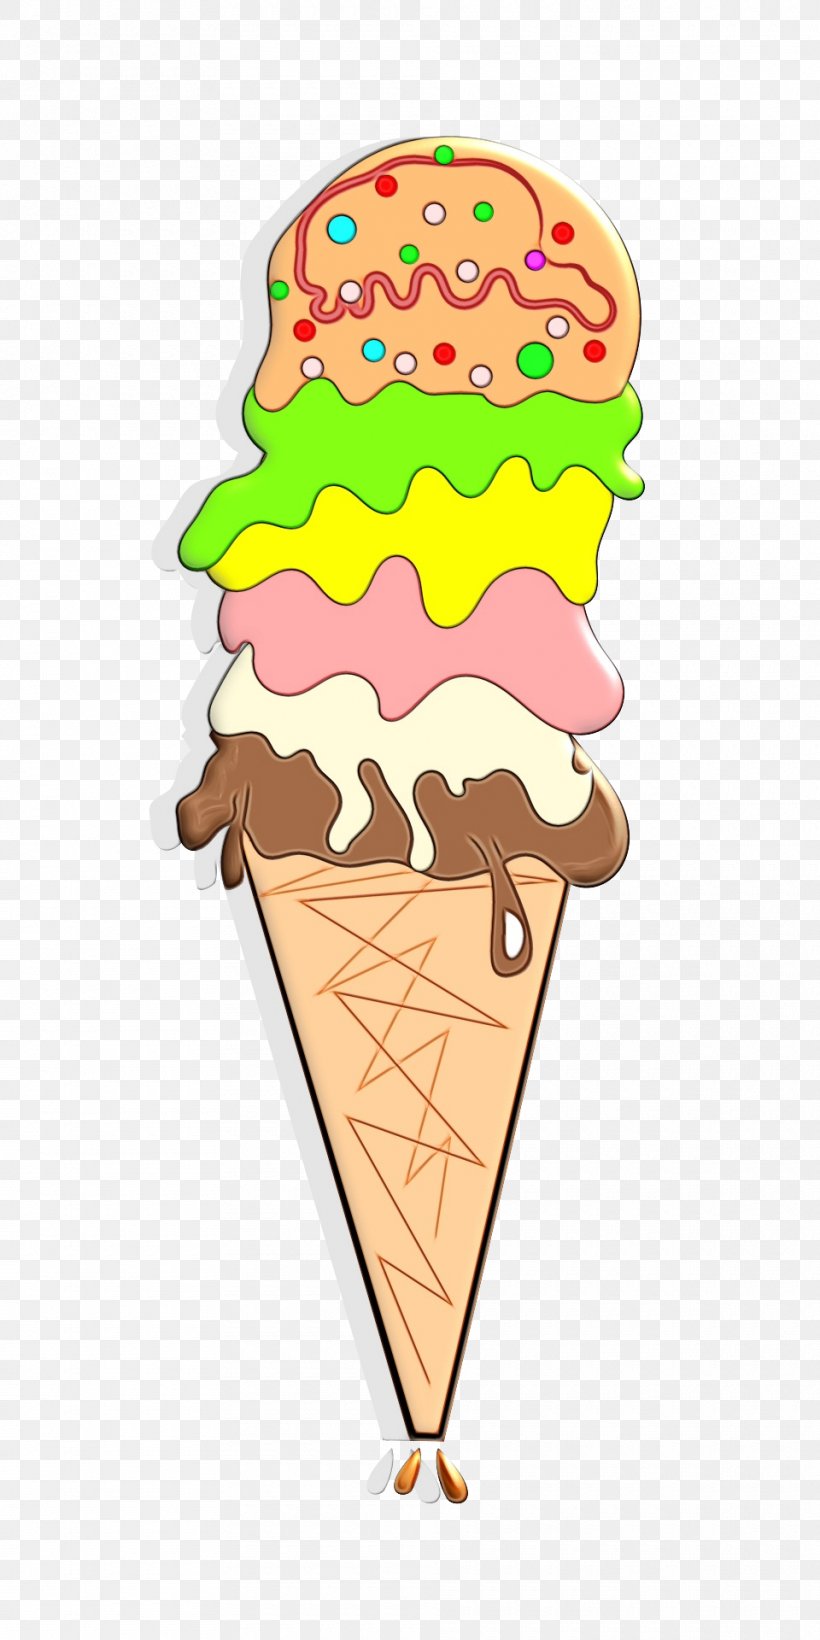 Ice Cream Cones Clip Art Illustration, PNG, 960x1920px, Ice Cream, Cake Decorating Supply, Chocolate Ice Cream, Cone, Cream Download Free